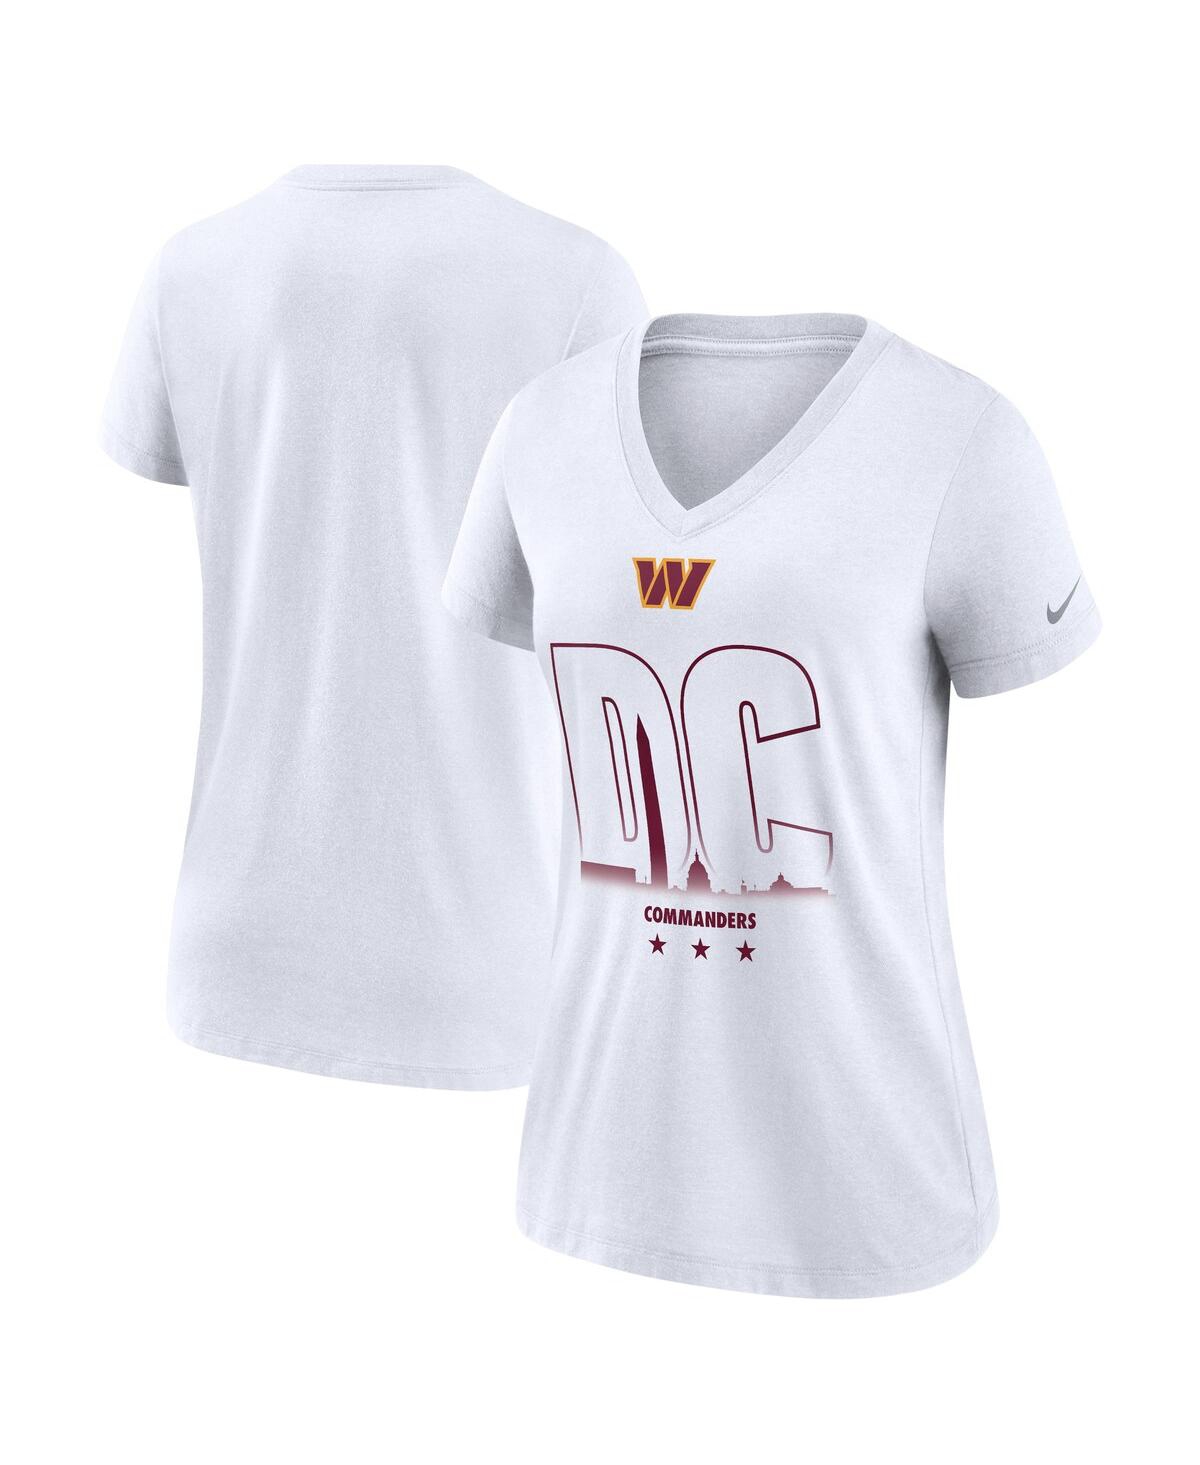 Women's Nike White Washington Commanders Tri-Blend V-Neck T-shirt - White